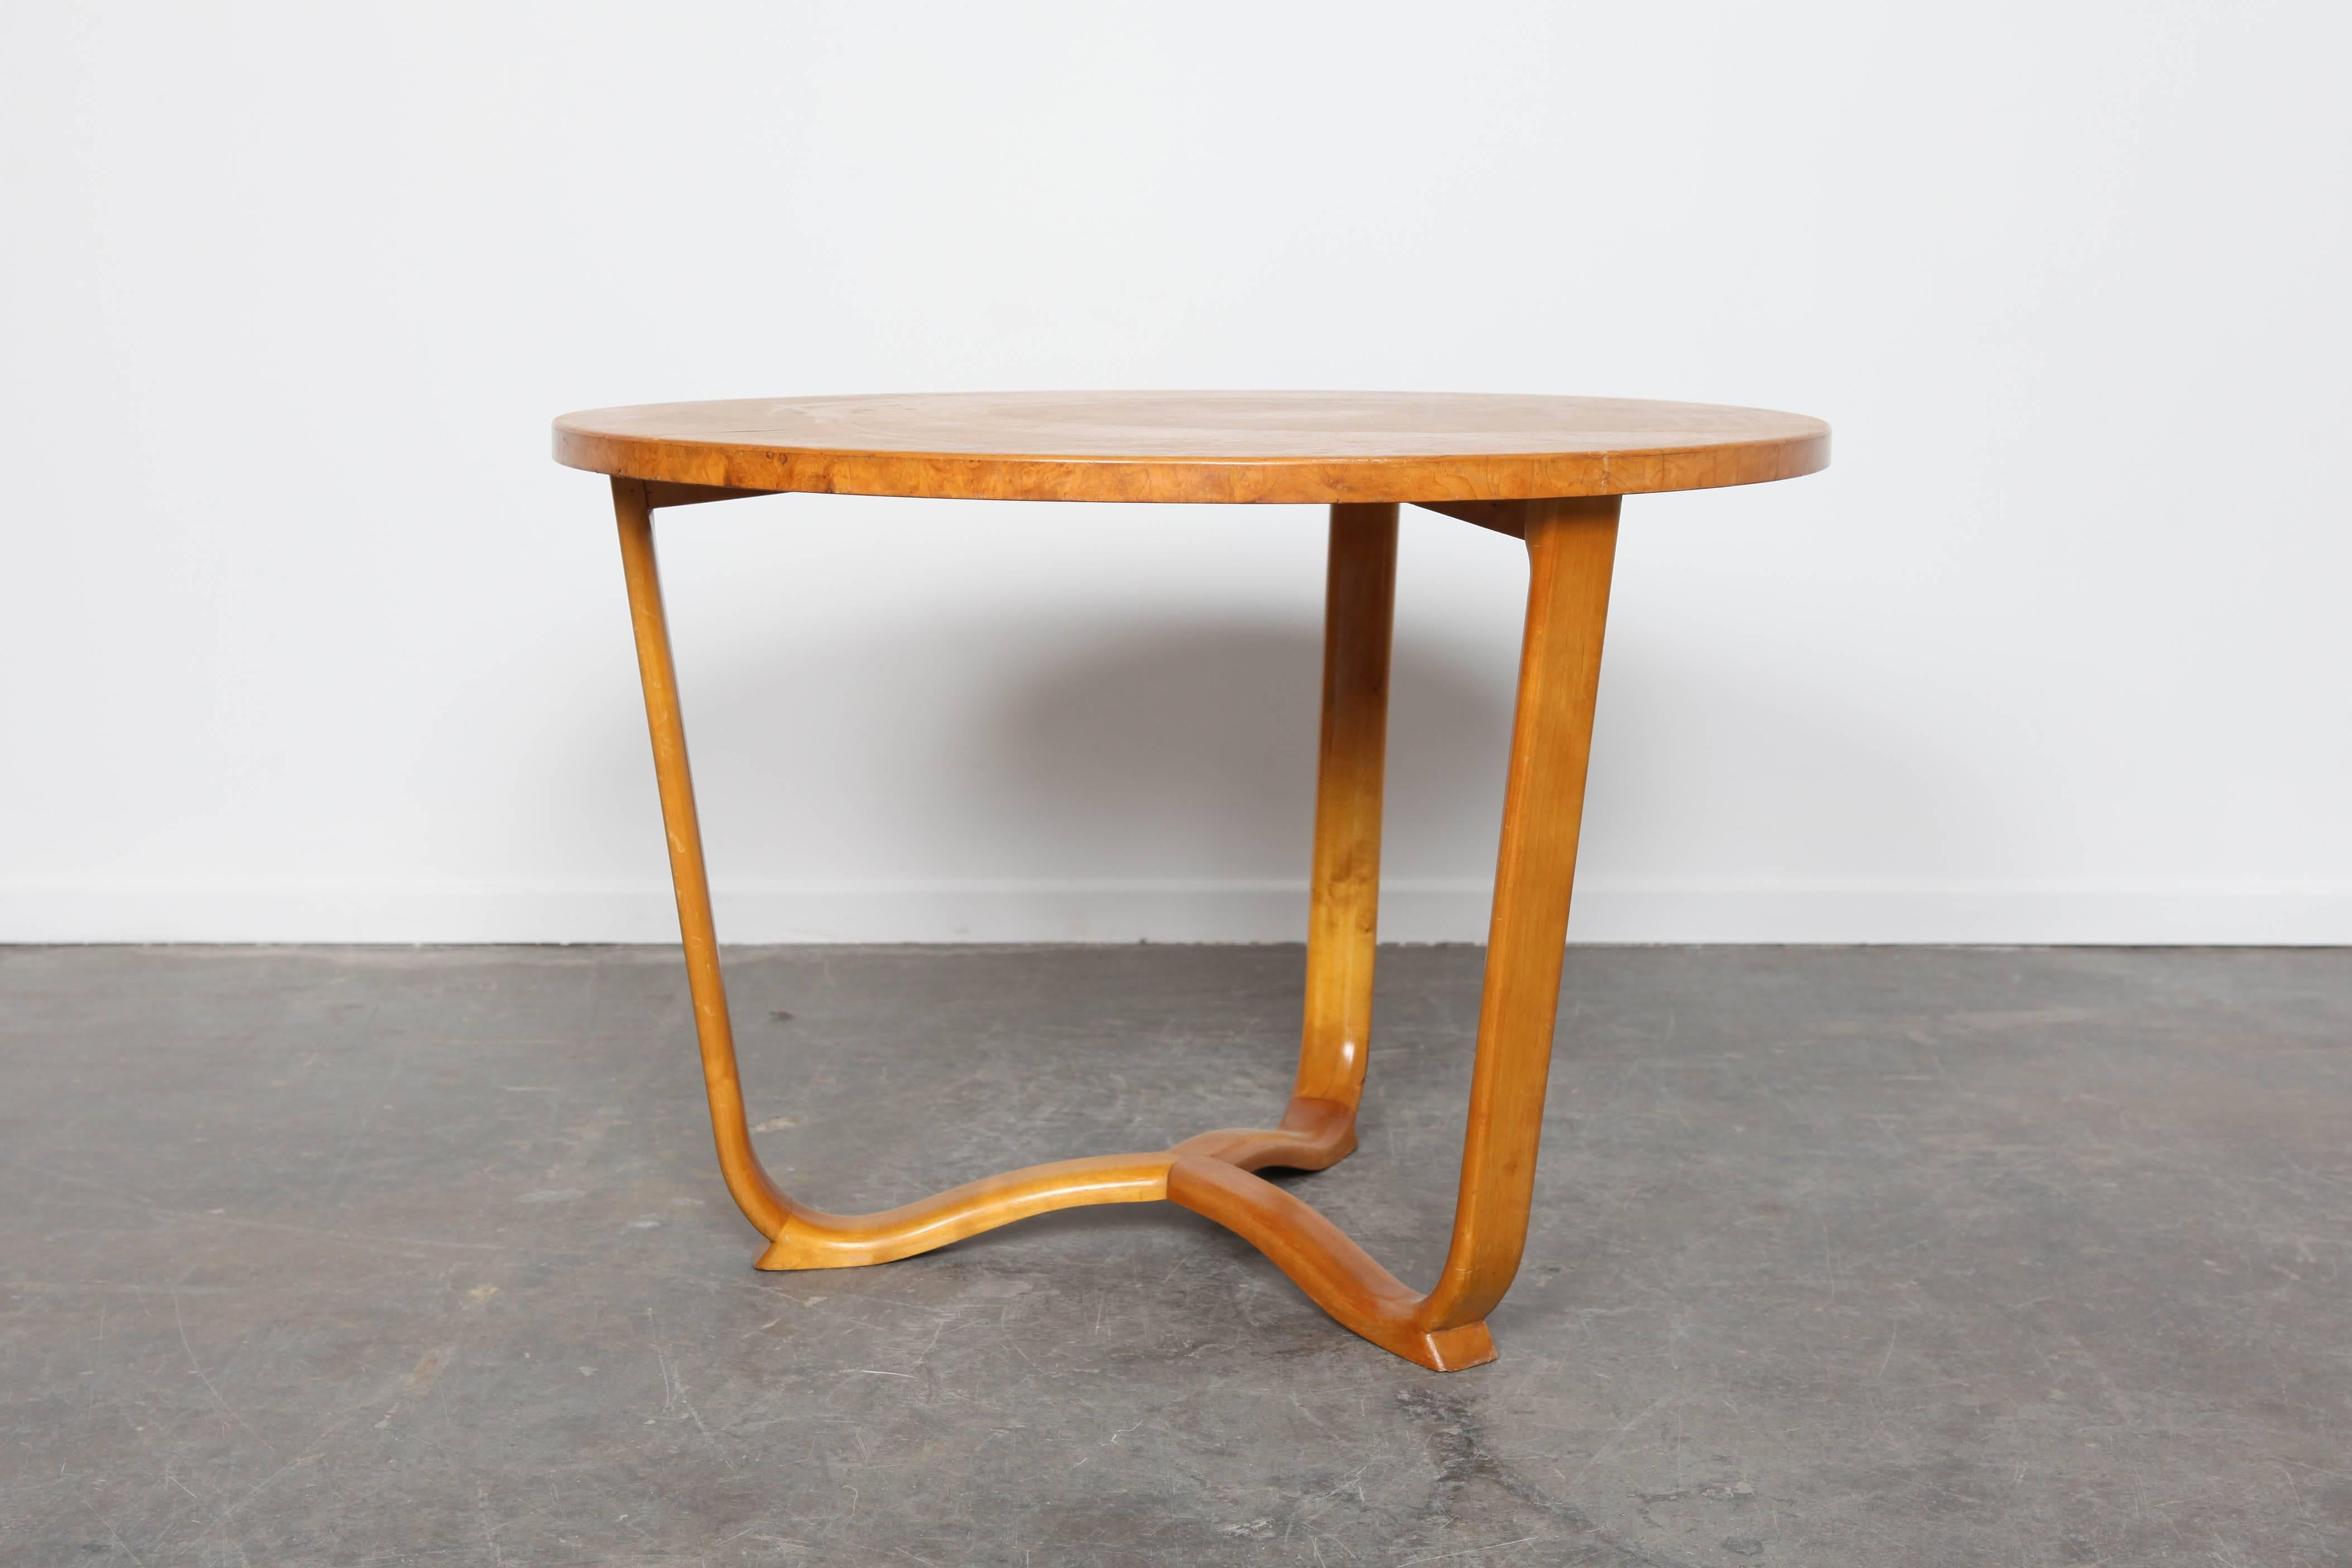 Burl wood coffee table, with veneers laid in pie shape. Three legs bent.